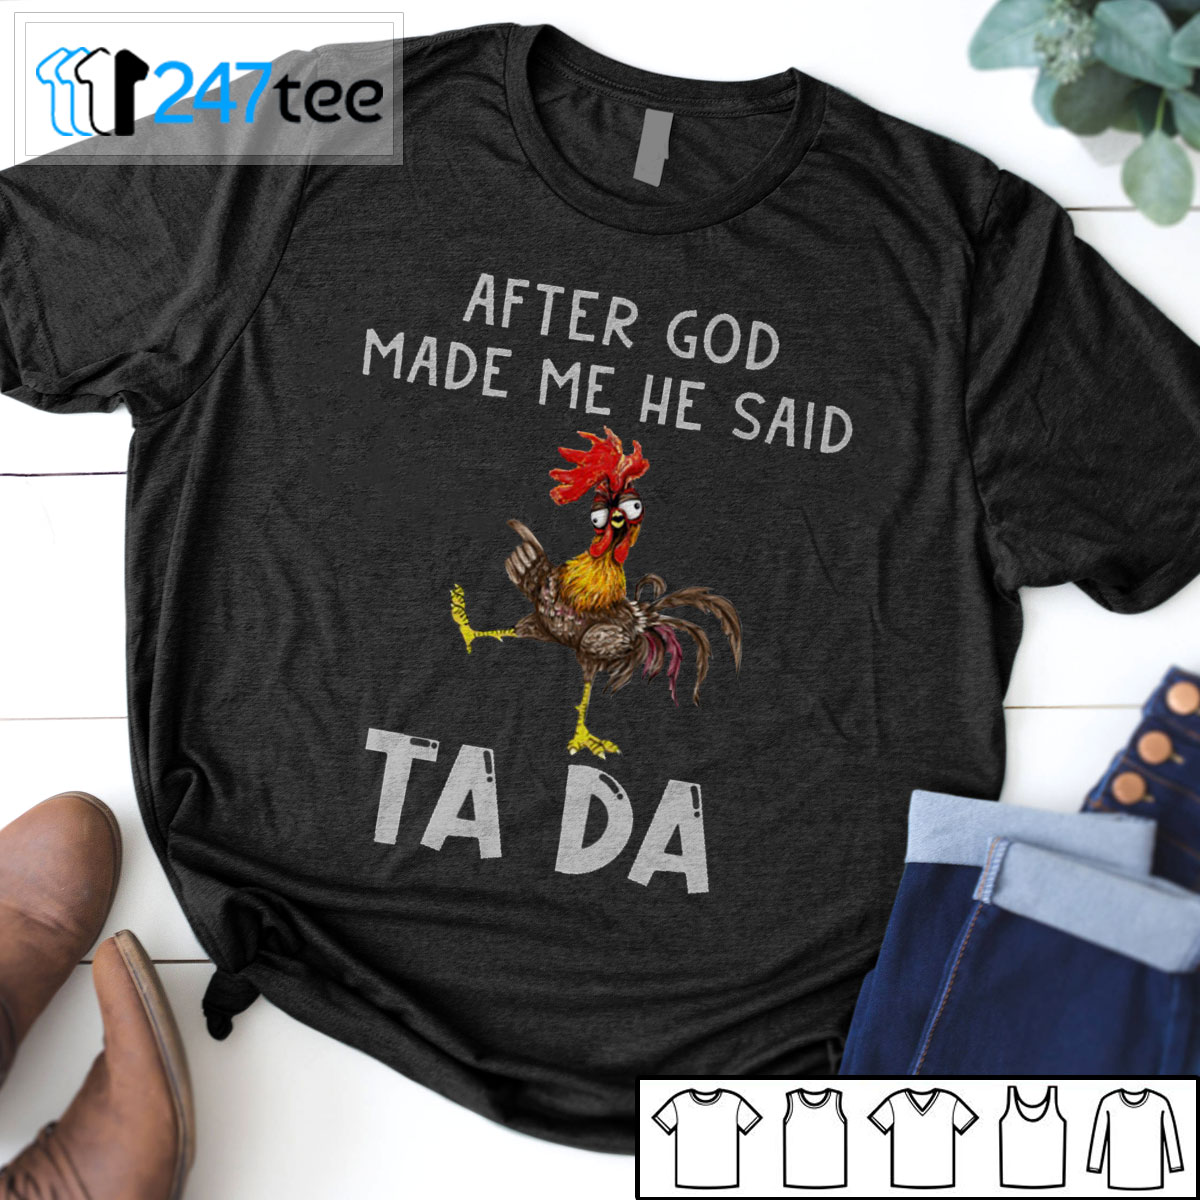 After god made me he said Tada T-shirt